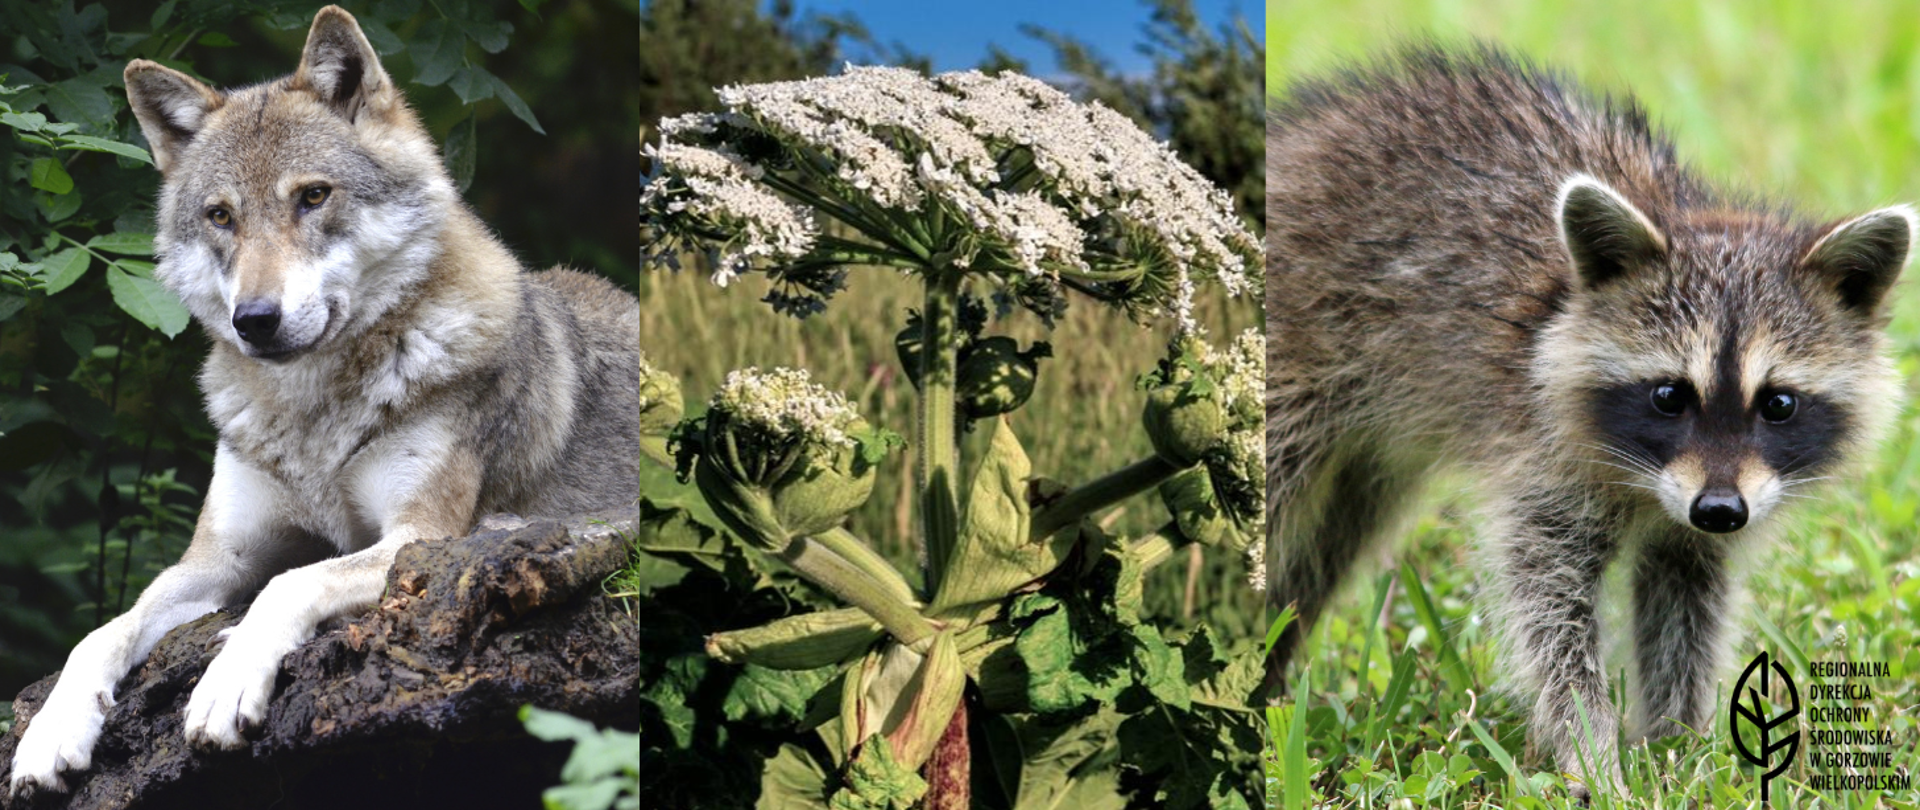 Grafika składająca się trzech zdjęć. Od lewej strony wilk, zielona roślina z białymi kwiatami, po prawej szop pracz. W lewym dolnym rogu czarny liść i napis Regionalna Dyrekcja Ochrony Środowiska w Gorzowie Wielkopolskim.